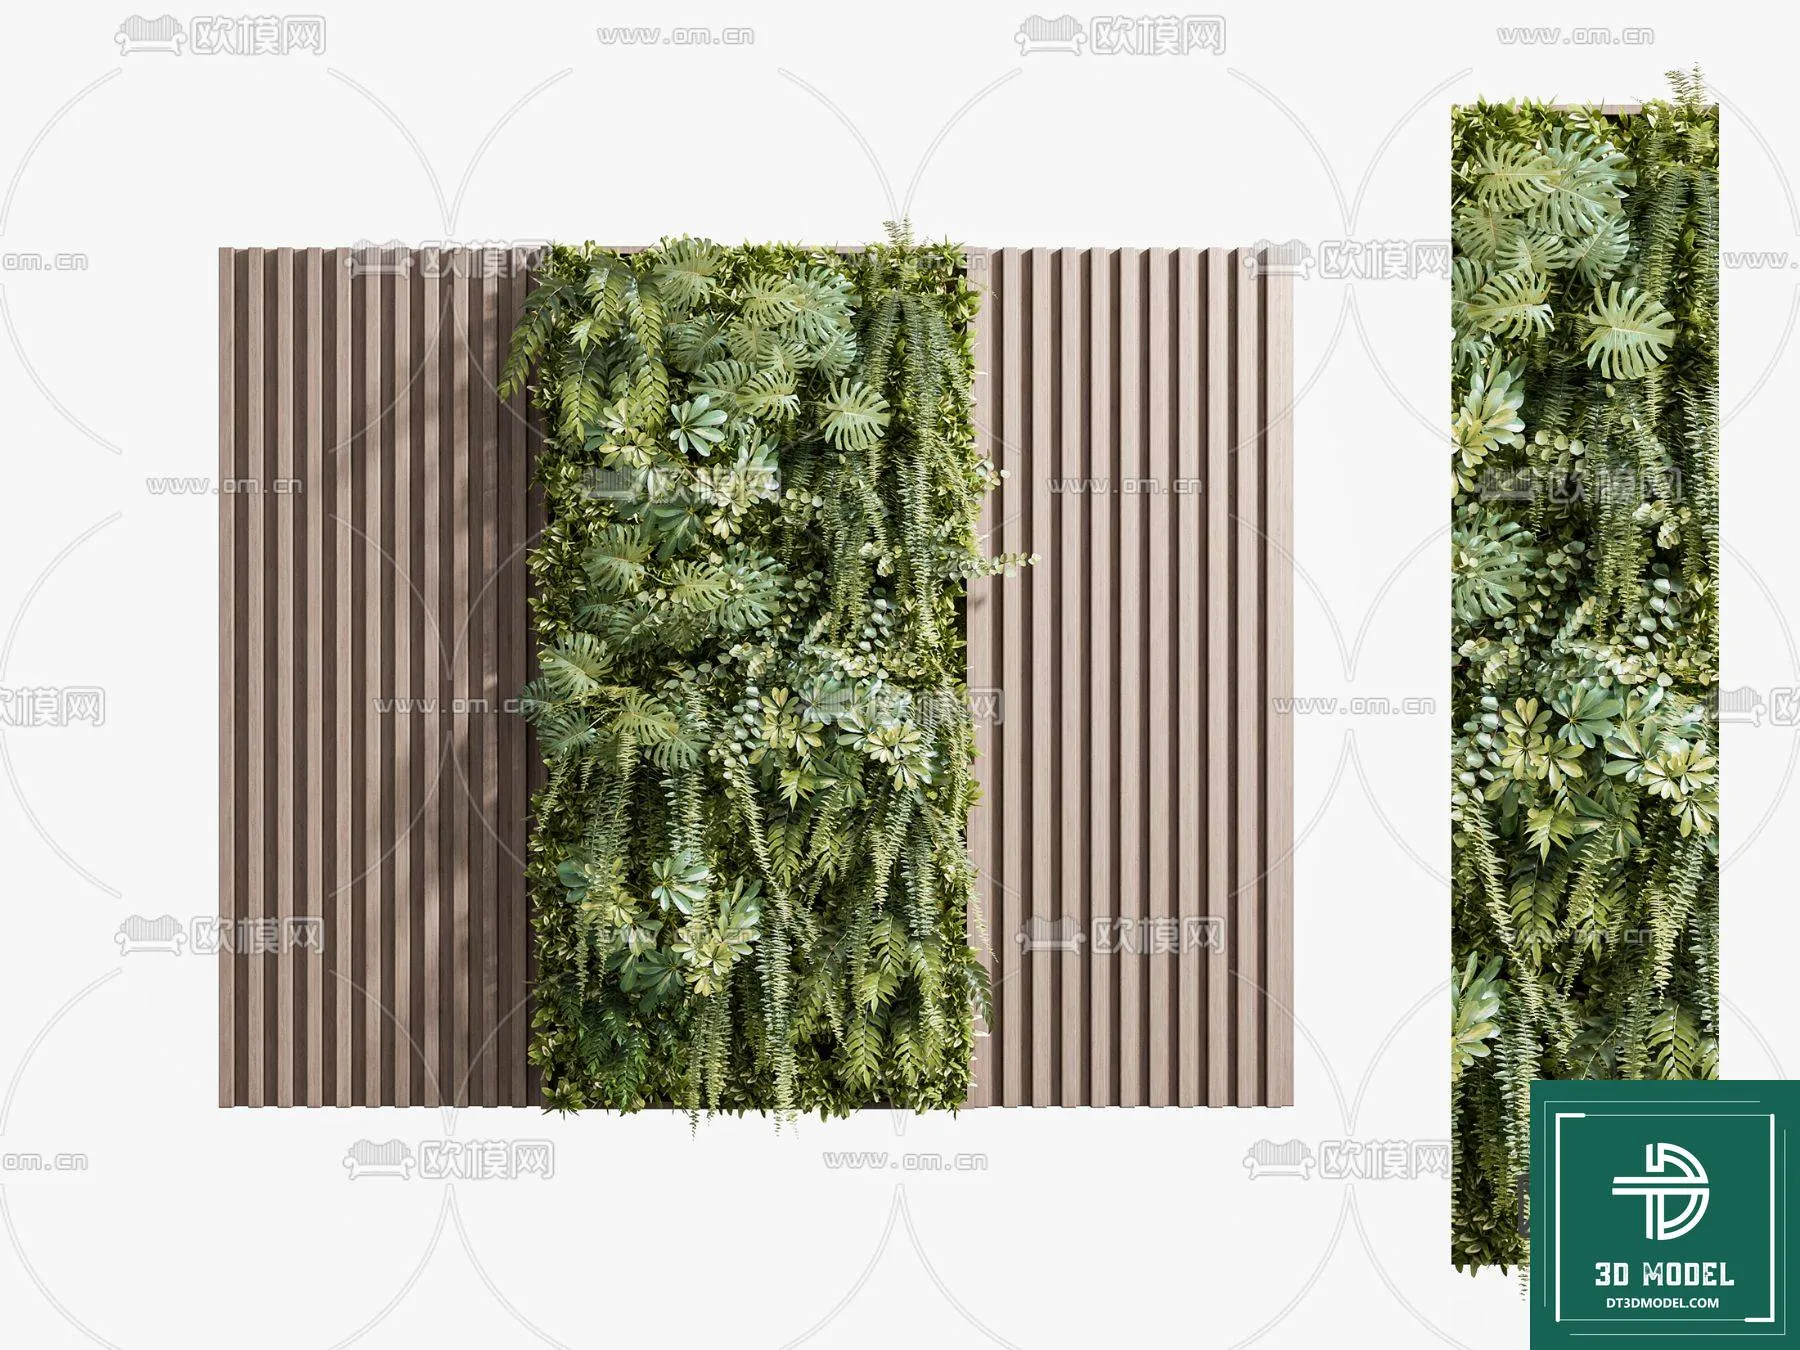 VERTICAL GARDEN – FITOWALL PLANT 3D MODEL – 056